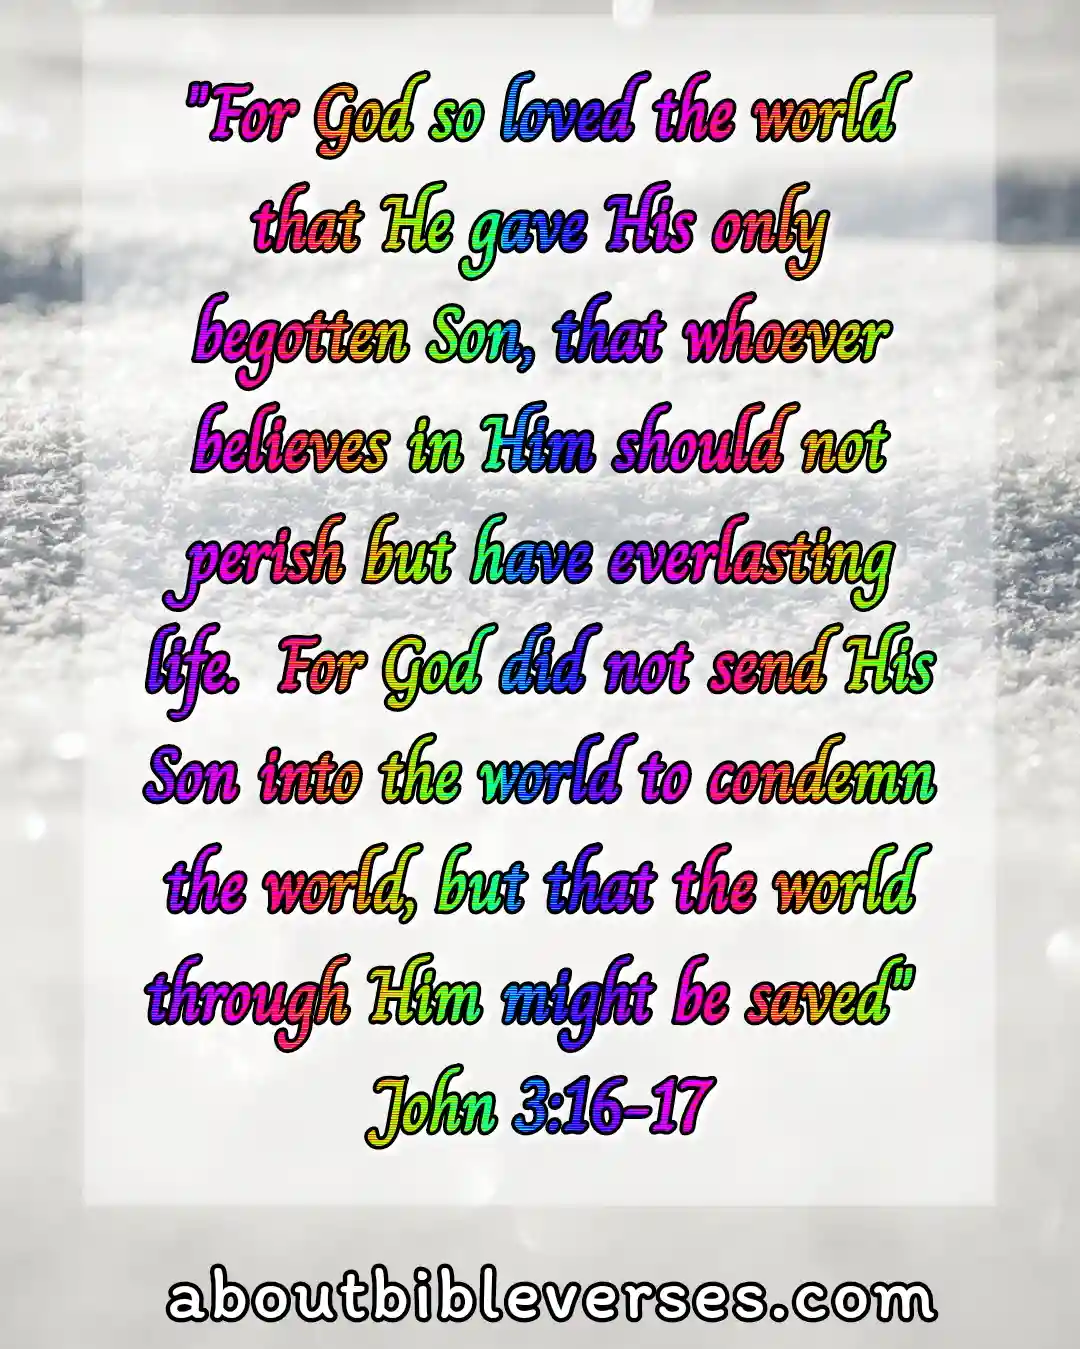 today bible verse (John 3:16-17)